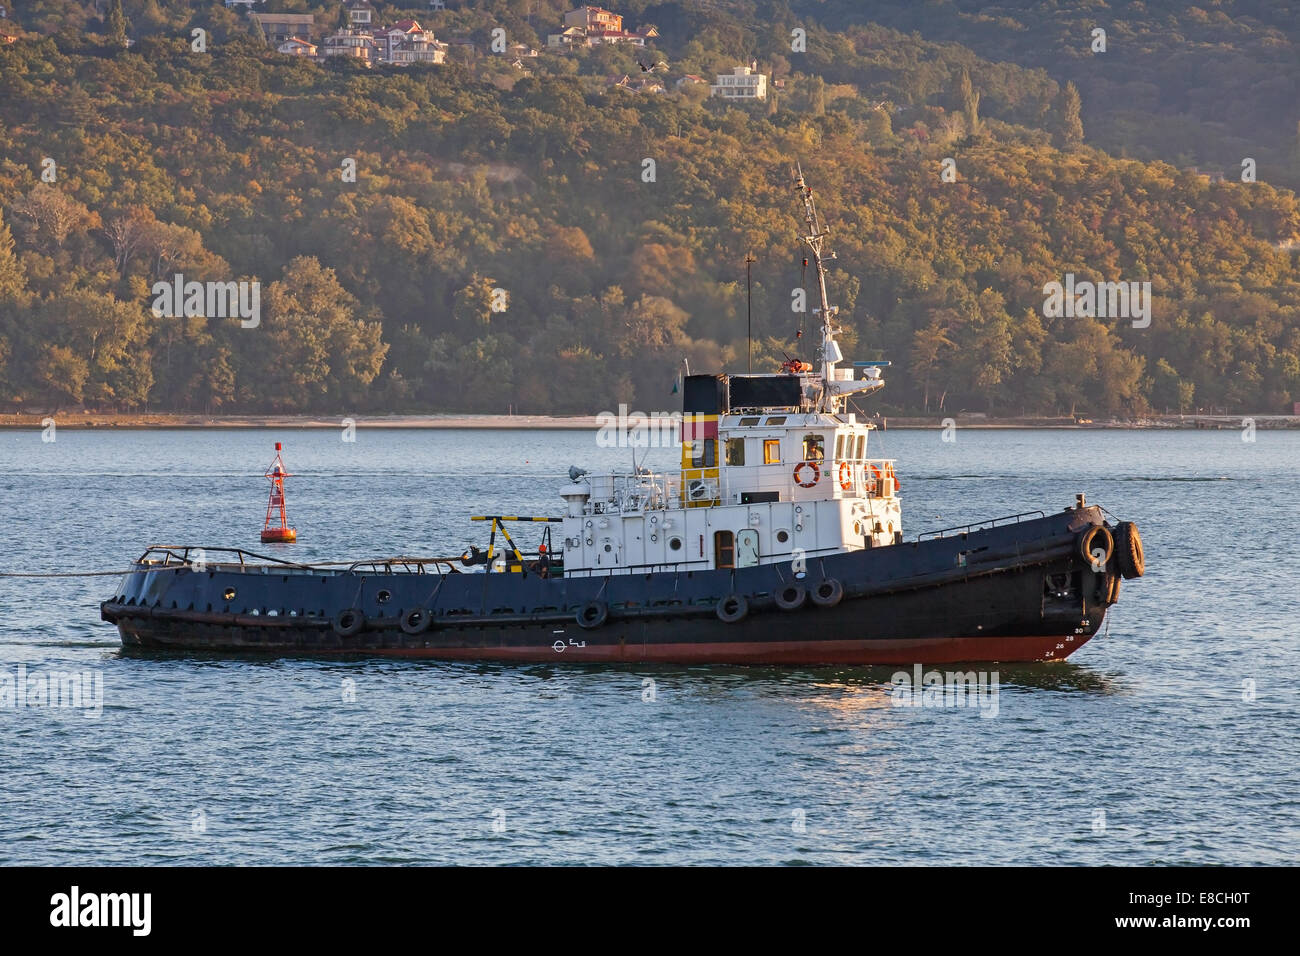 Black tug is underway on Black sea, Varna harbor, Bulgaria Stock Photo